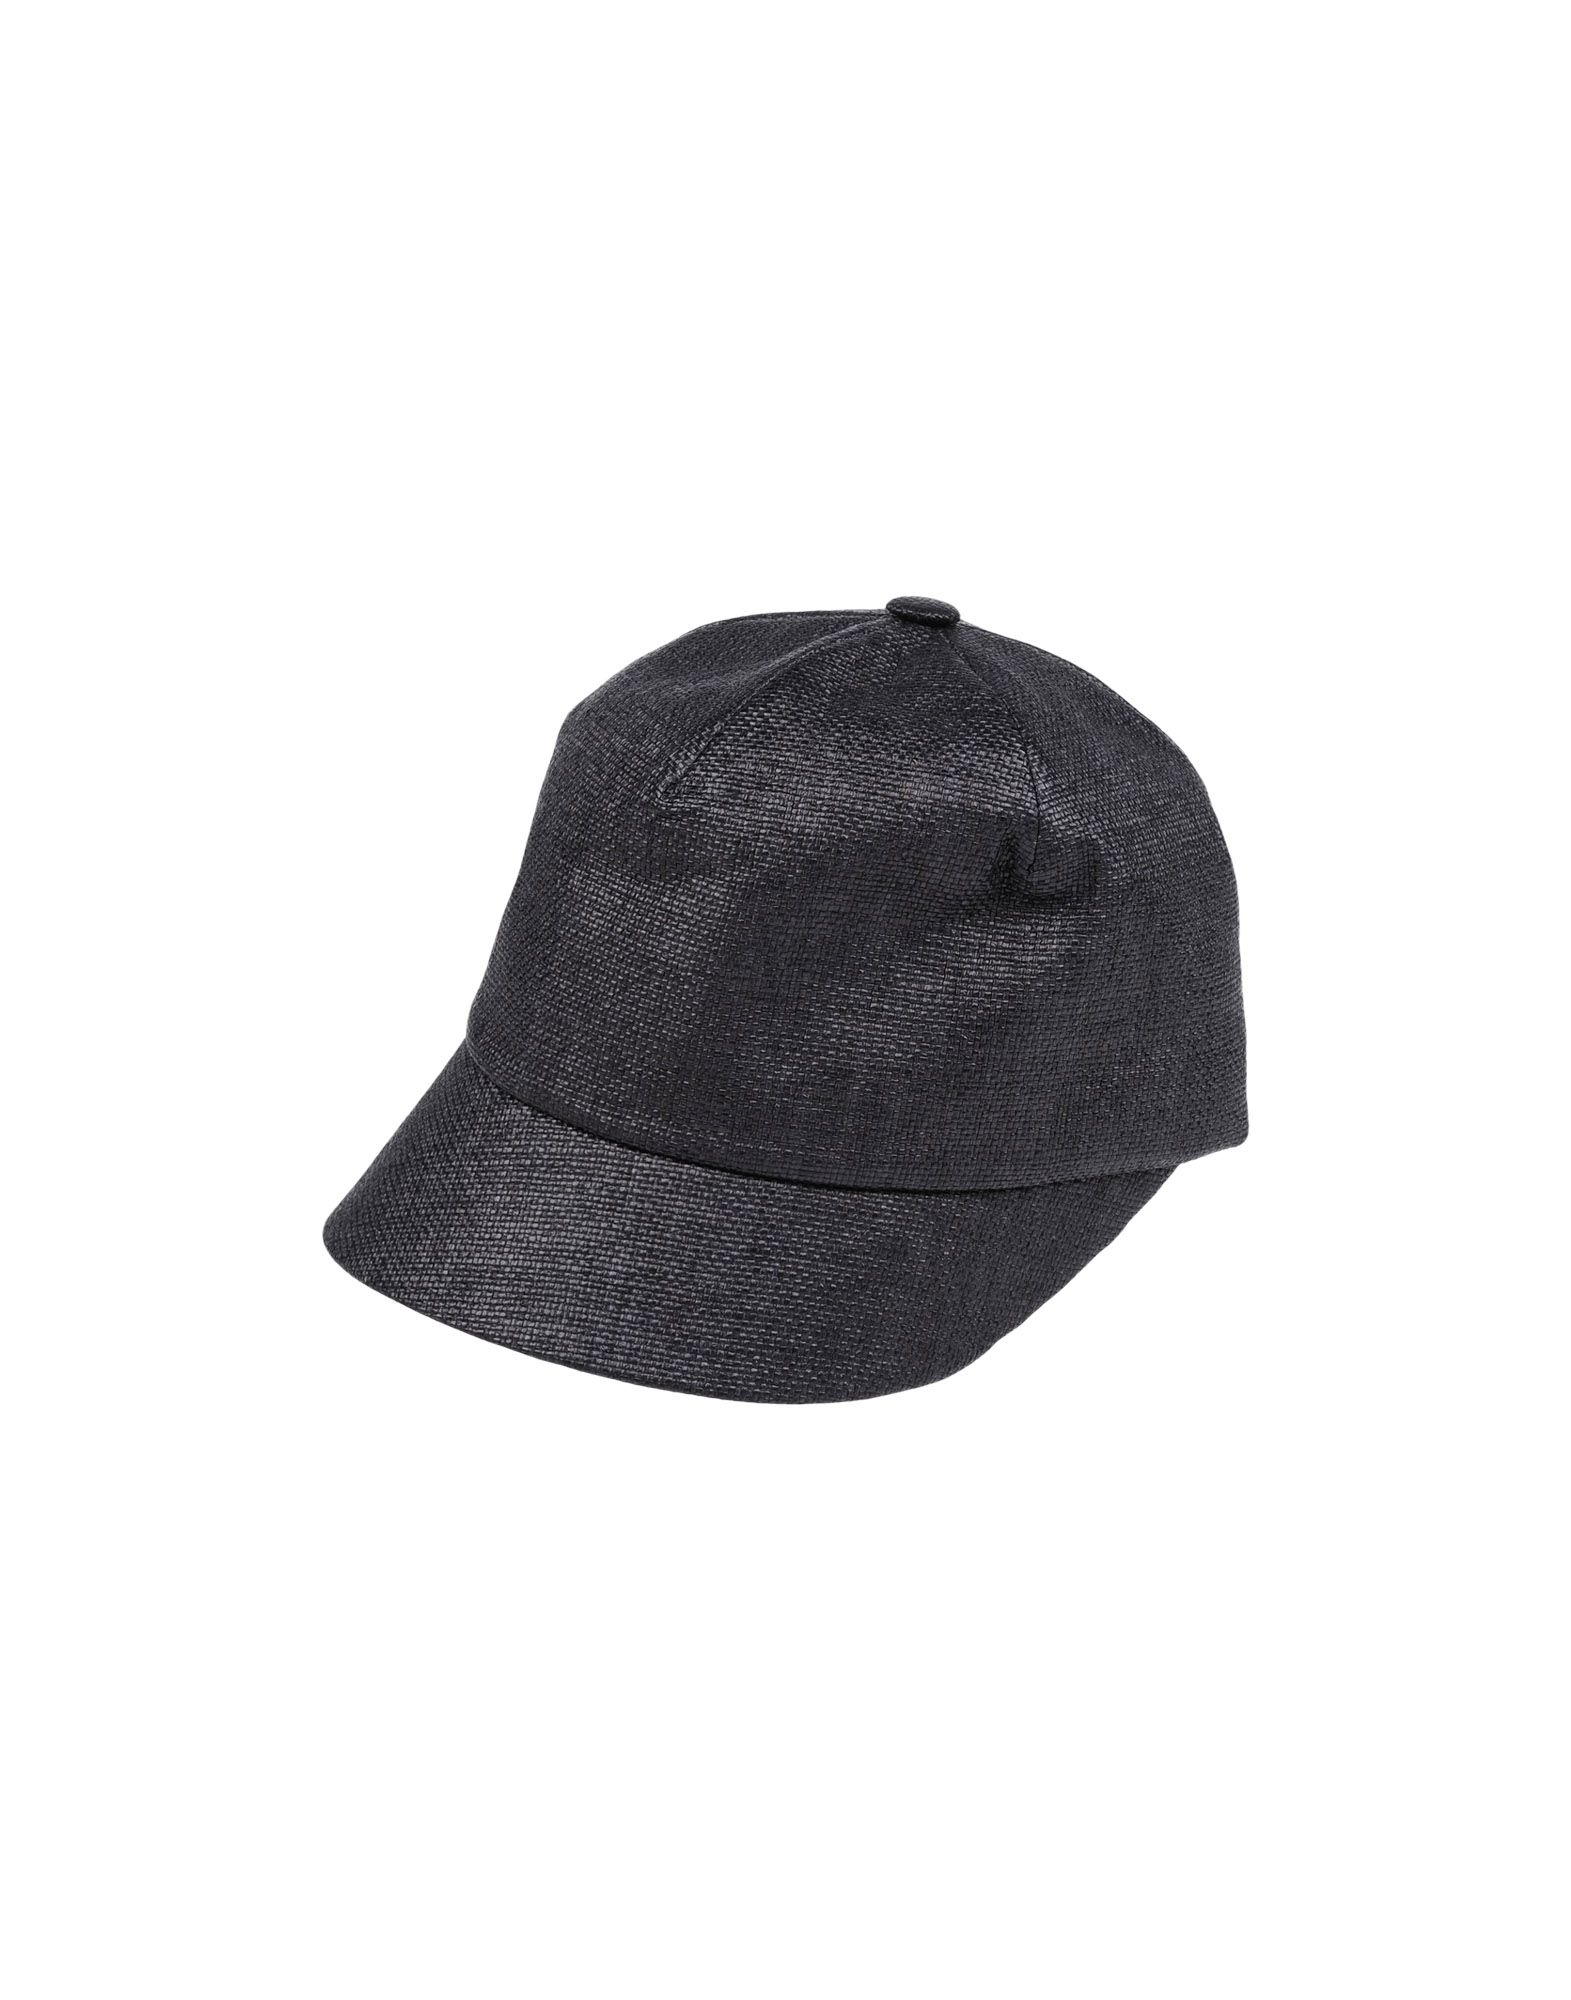 《送料無料》SUPER DUPER HATS メンズ 帽子 ブラック one size ナイロン 100%